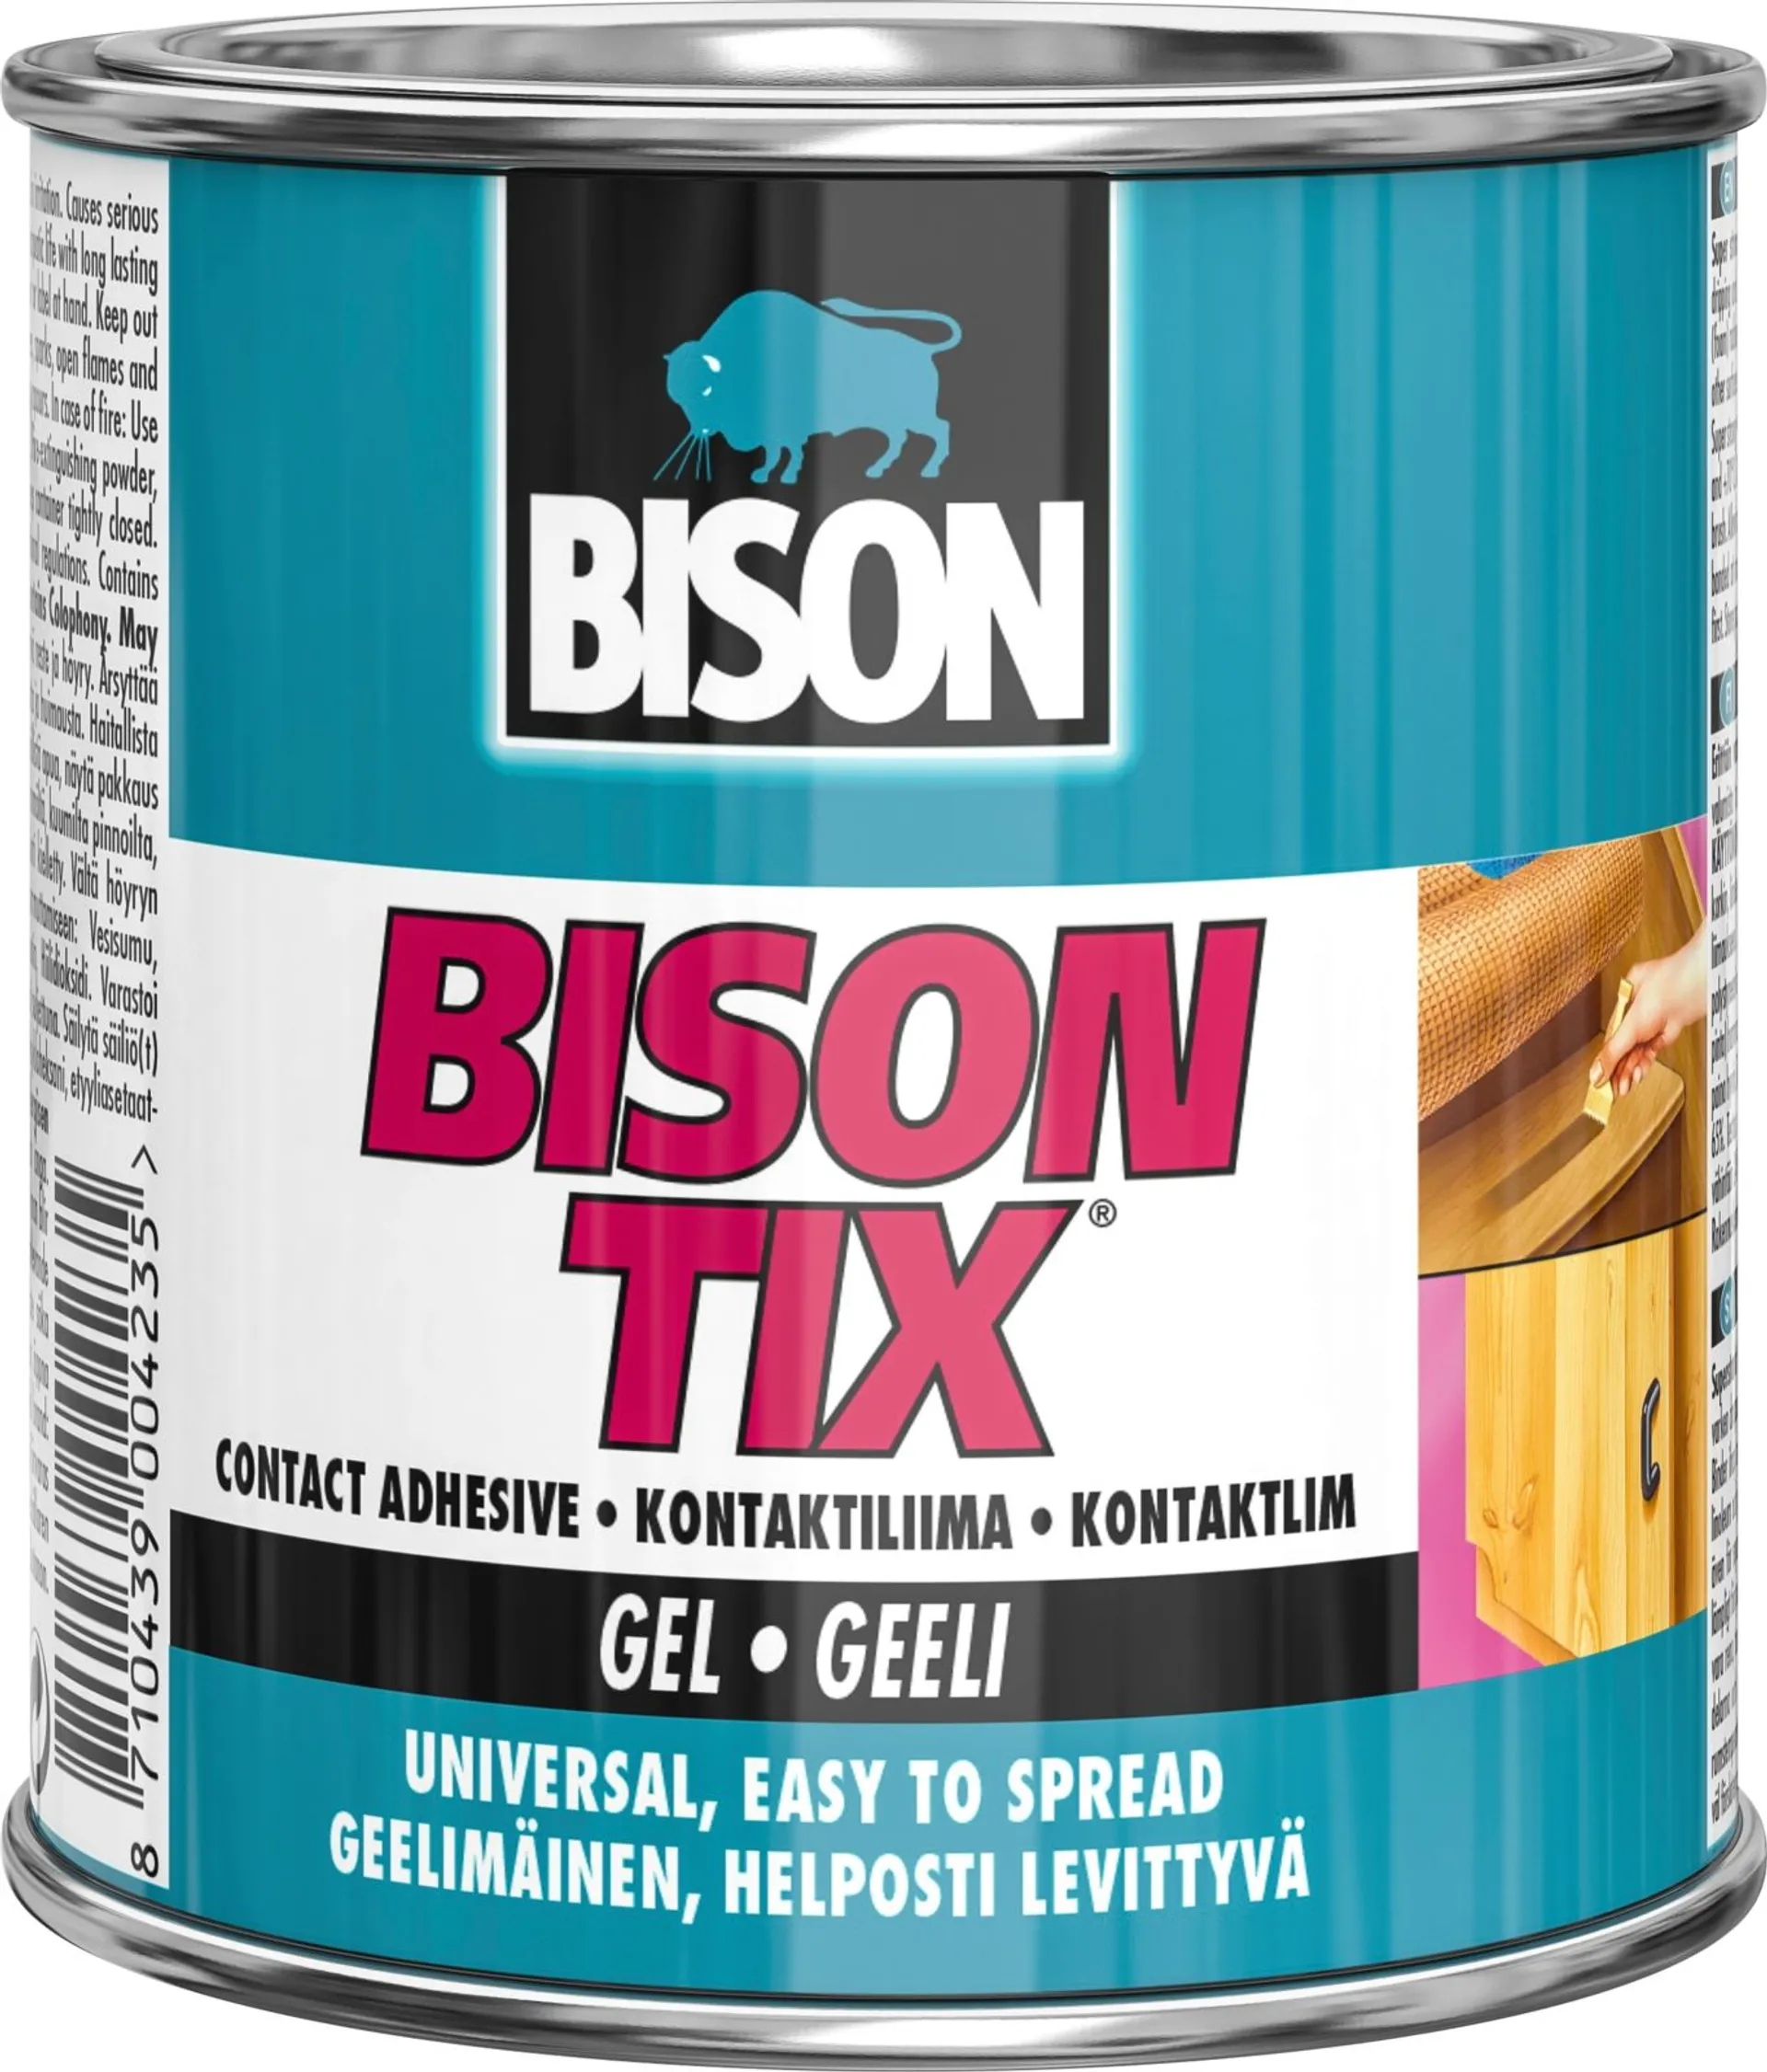 Bison kontaktiliima Tix Contact Adhesive Gel 250ML